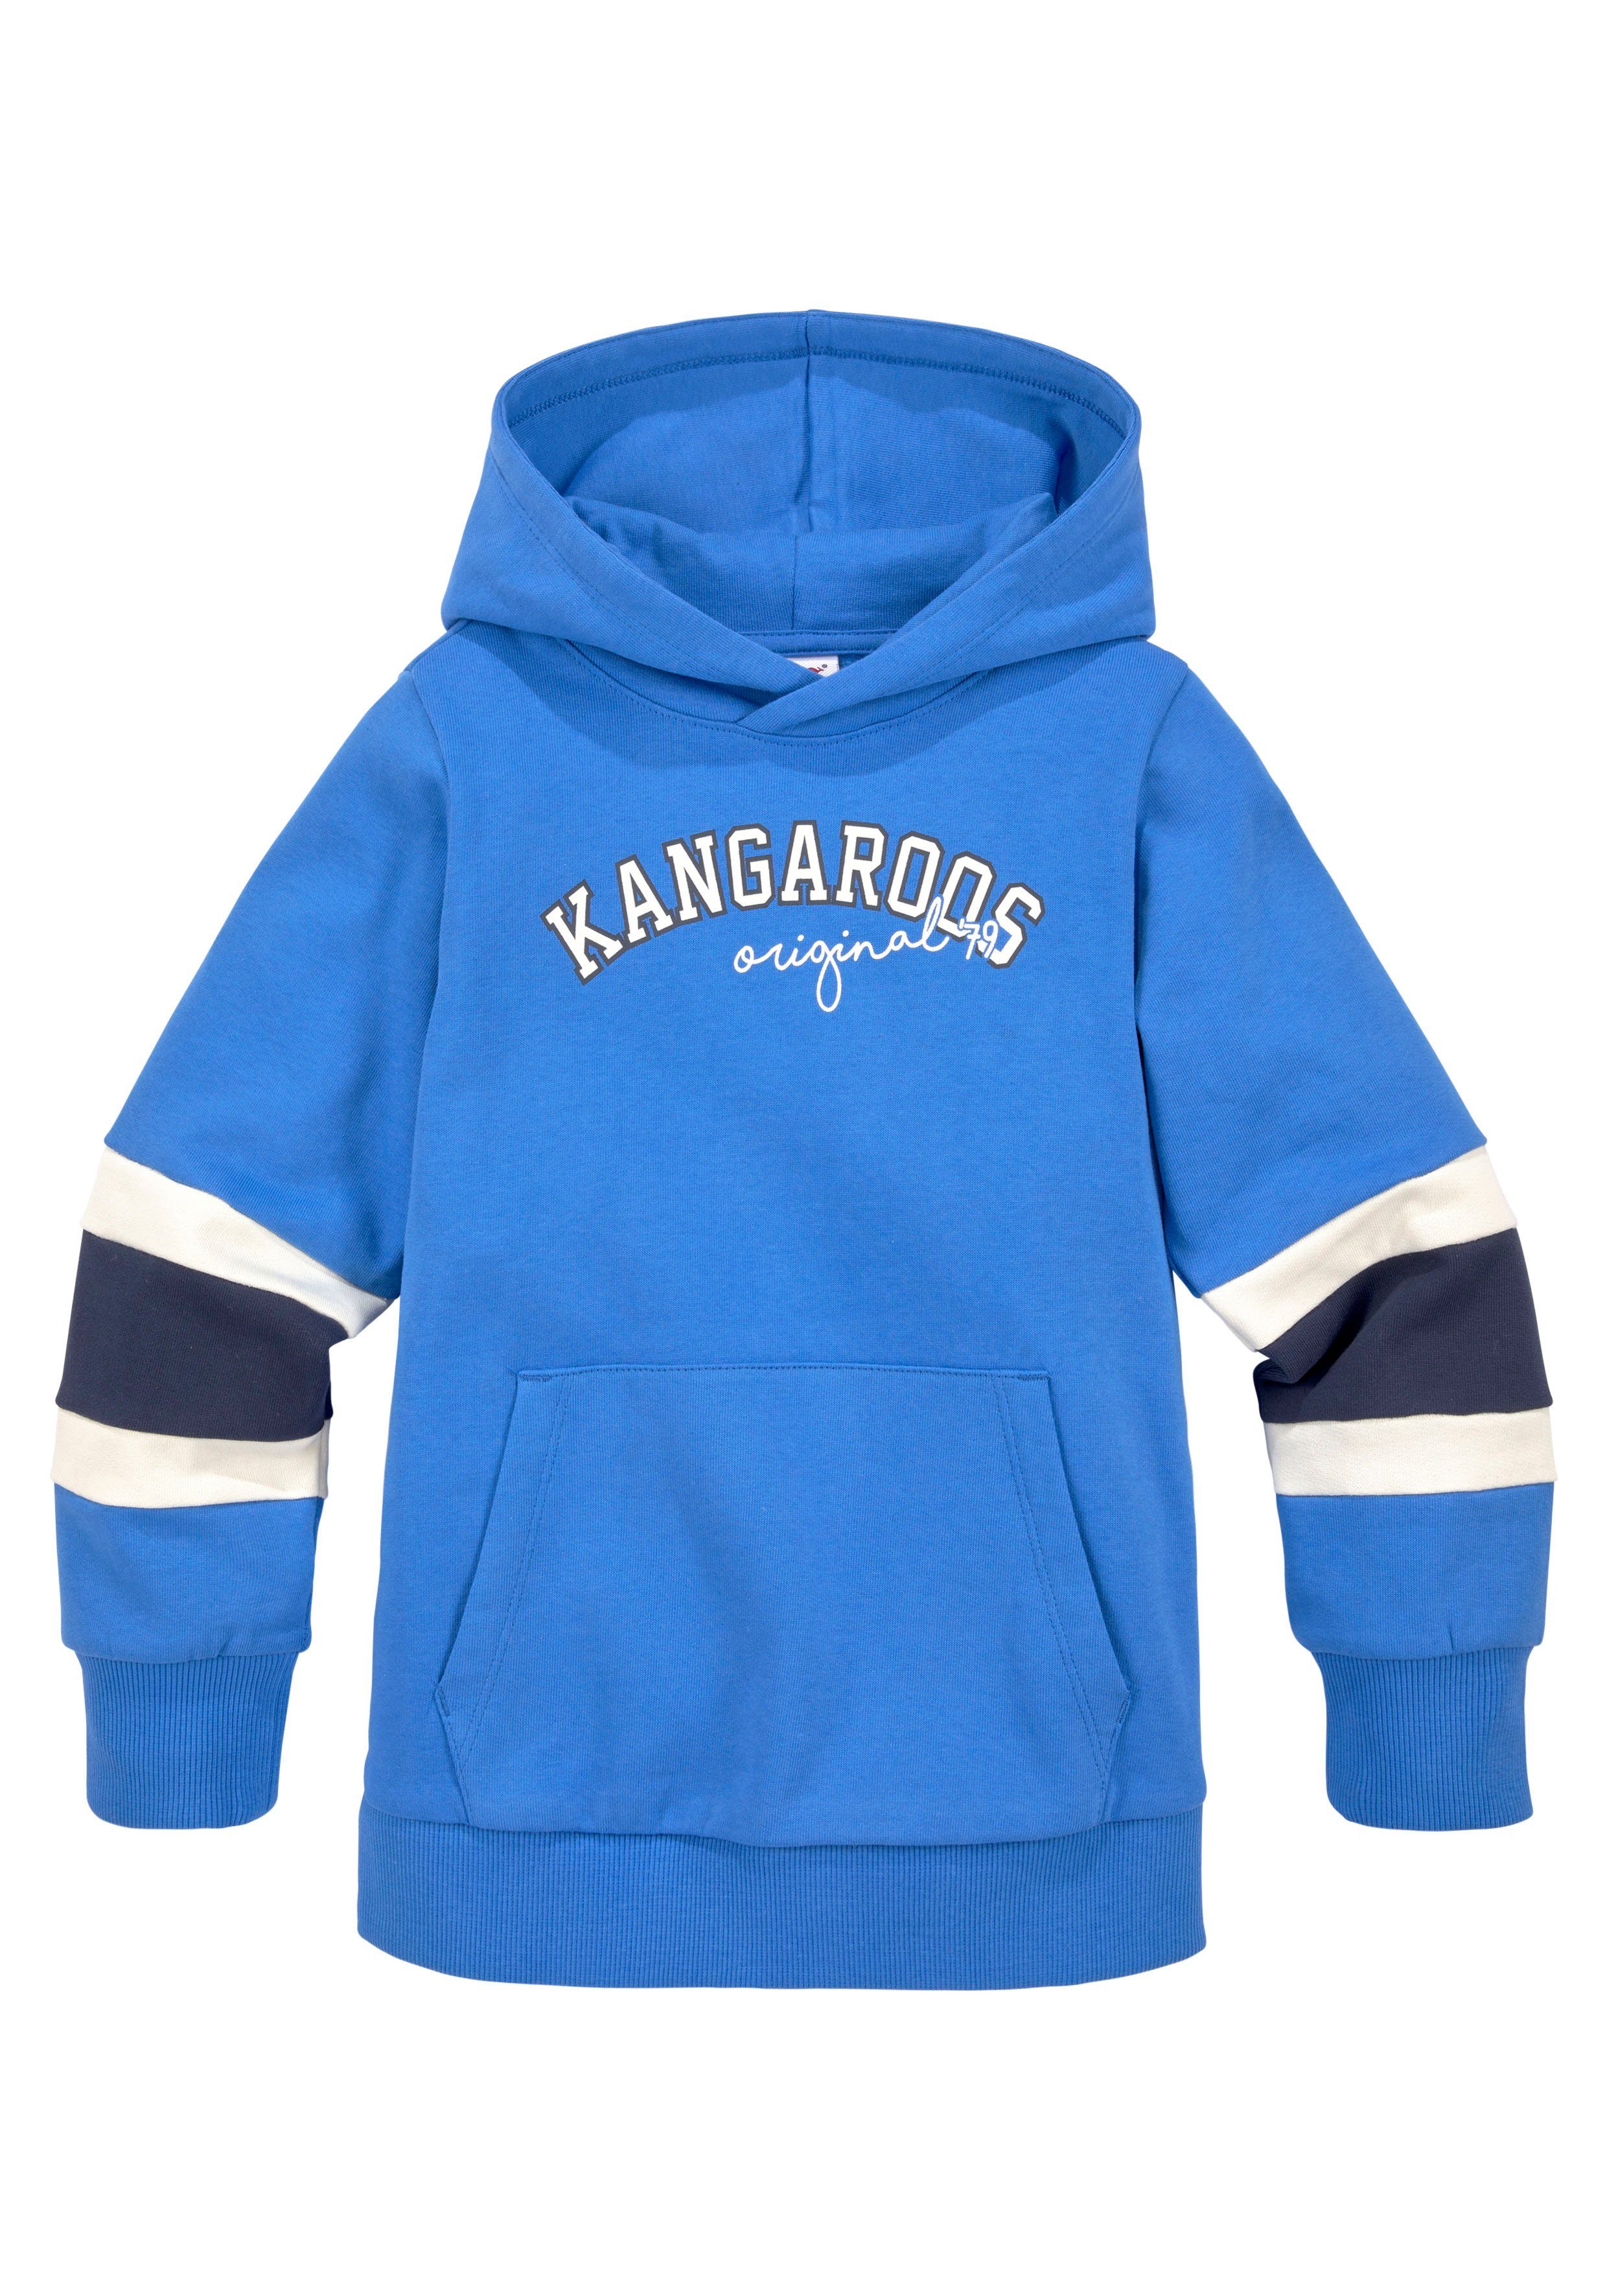 KangaROOS mit den Mini für Jungen Colorblocking, Ärmeln, Streifen an Kapuzensweatshirt